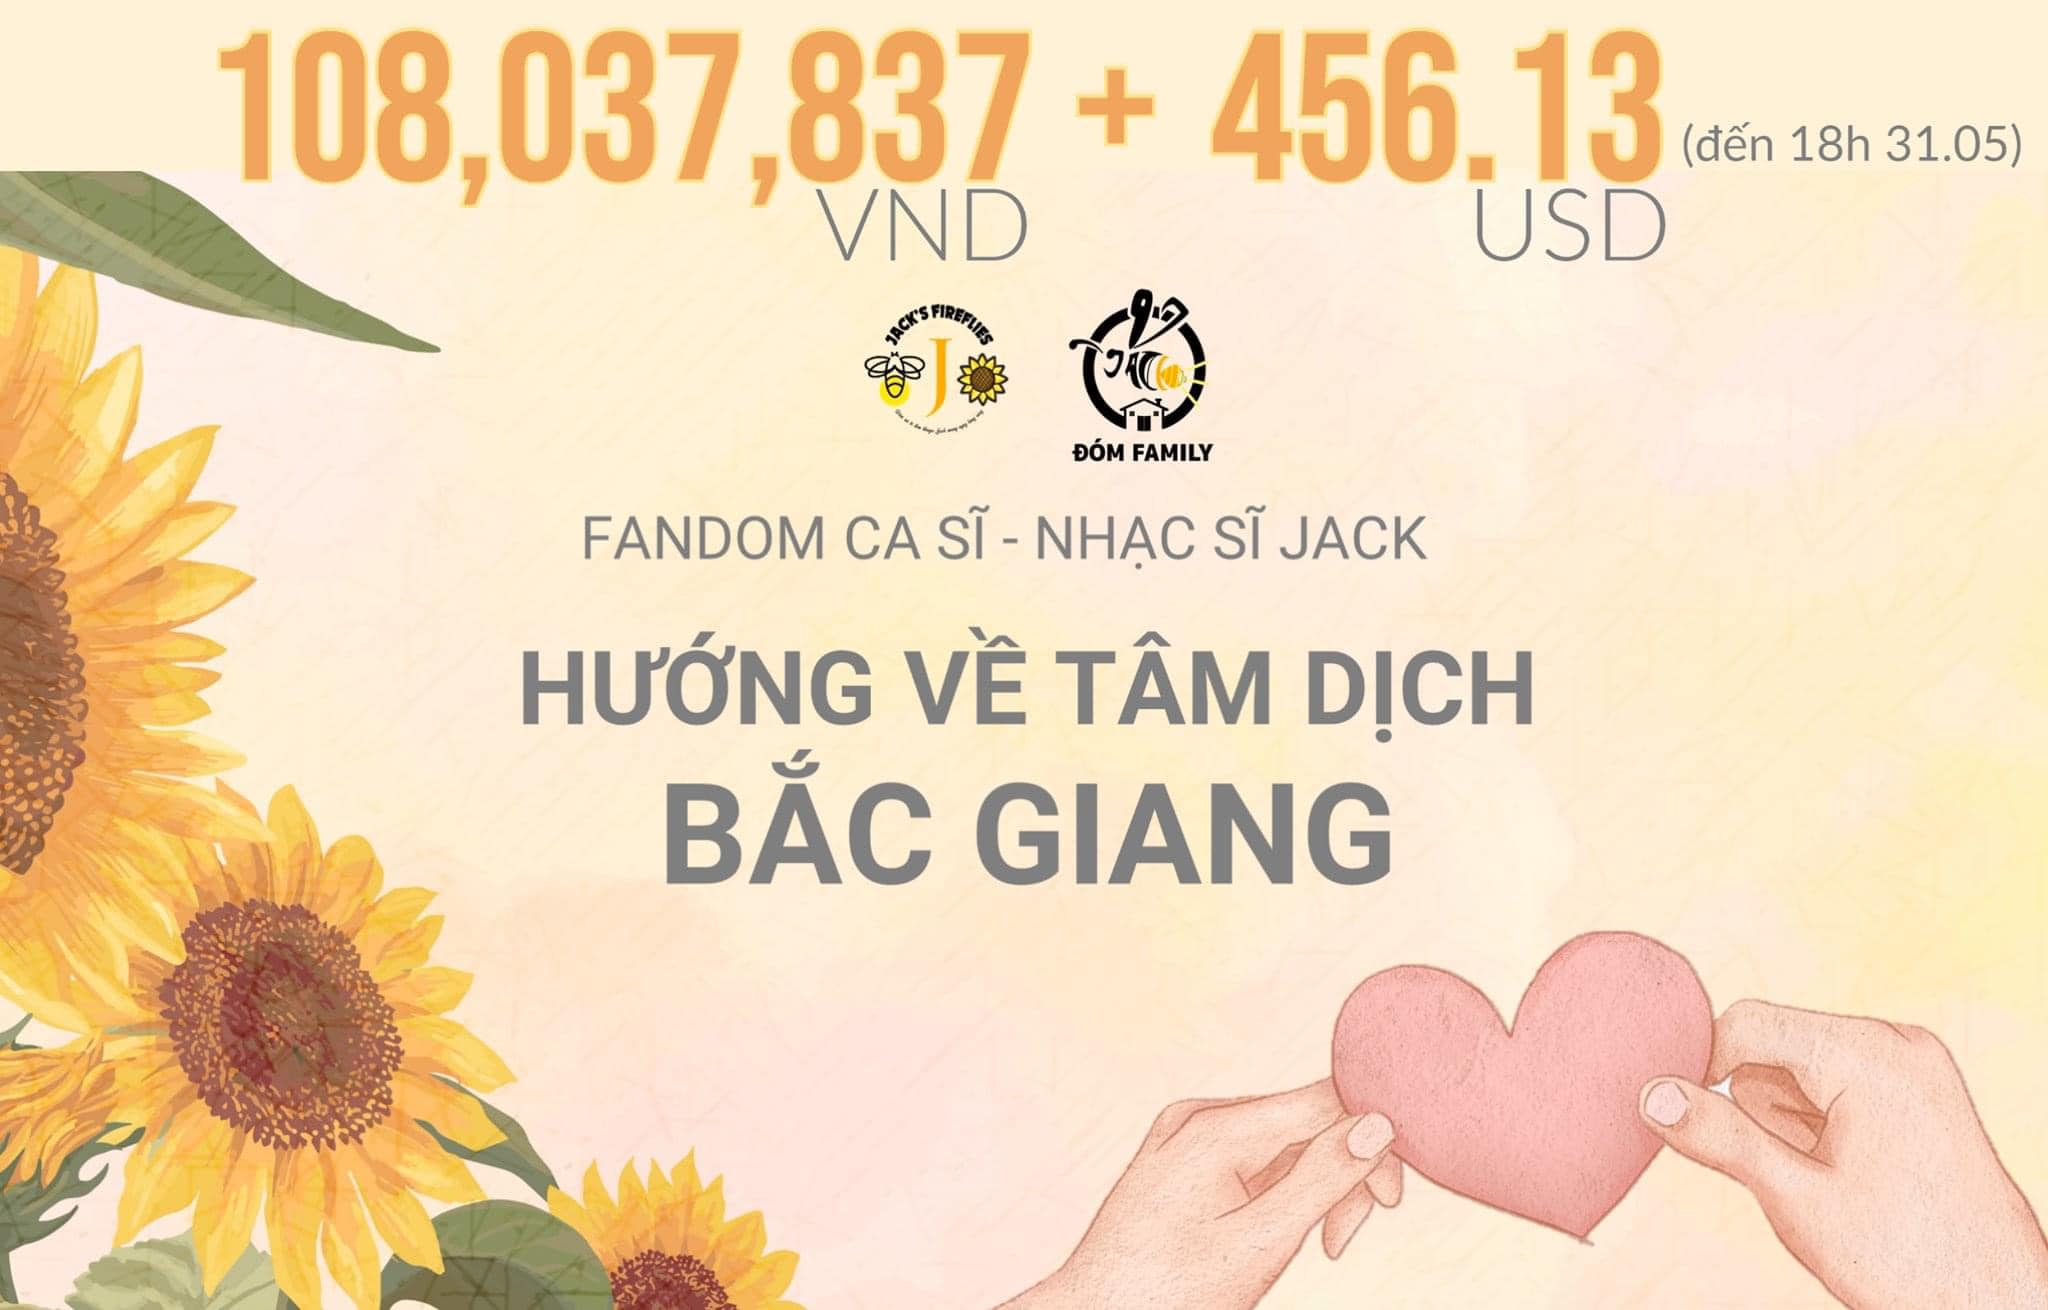 Jack cùng FC ủng hộ Bắc Giang gần 120 triệu, gửi xe quà đến BV Nhi Đồng cho các em bé nhân ngày 1/6